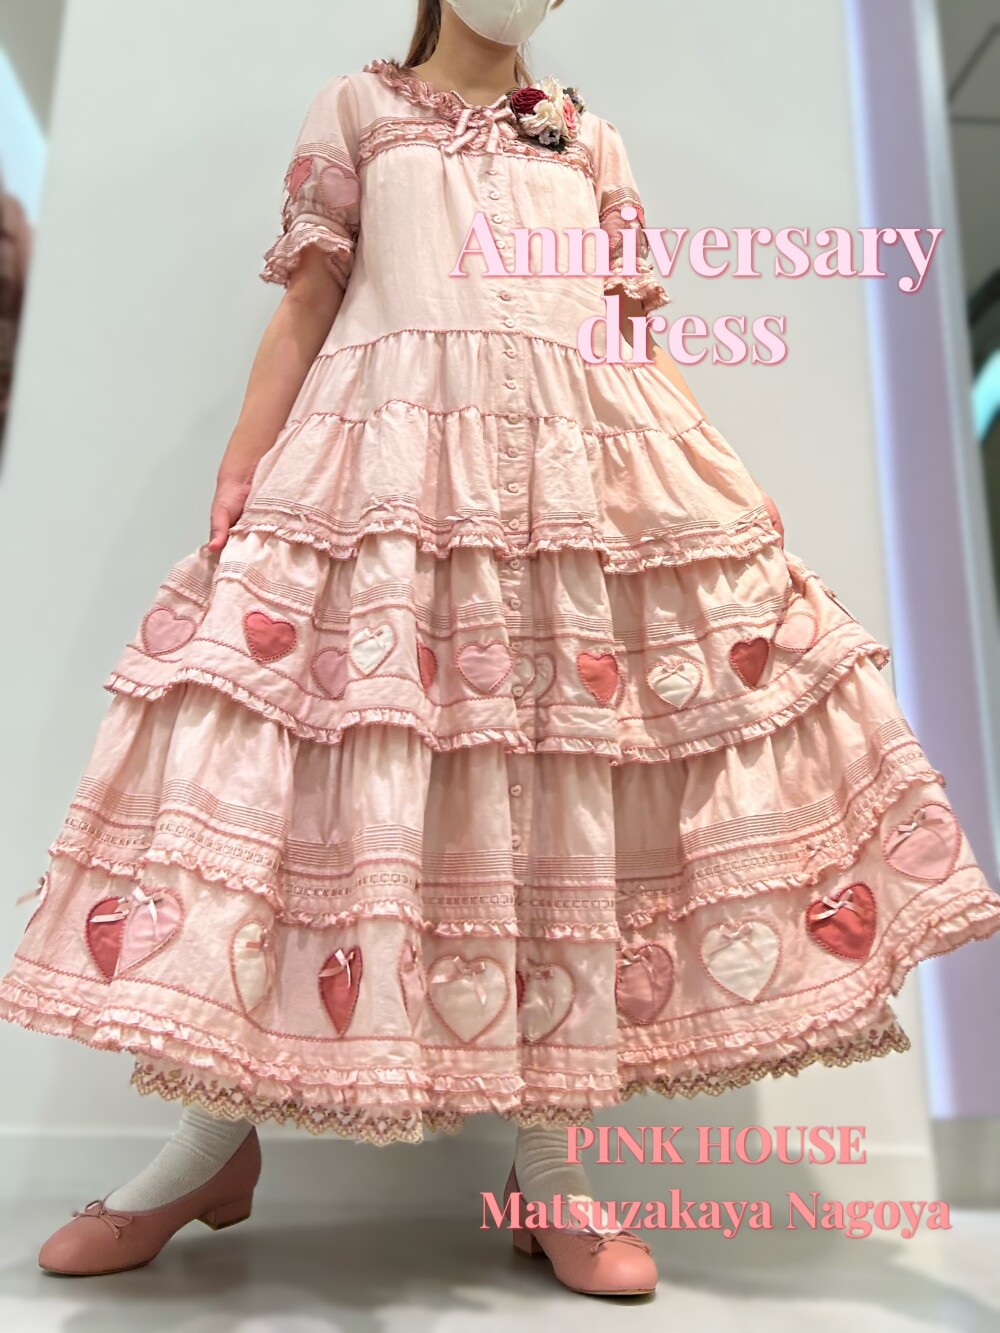 〜*anniversary dress *〜